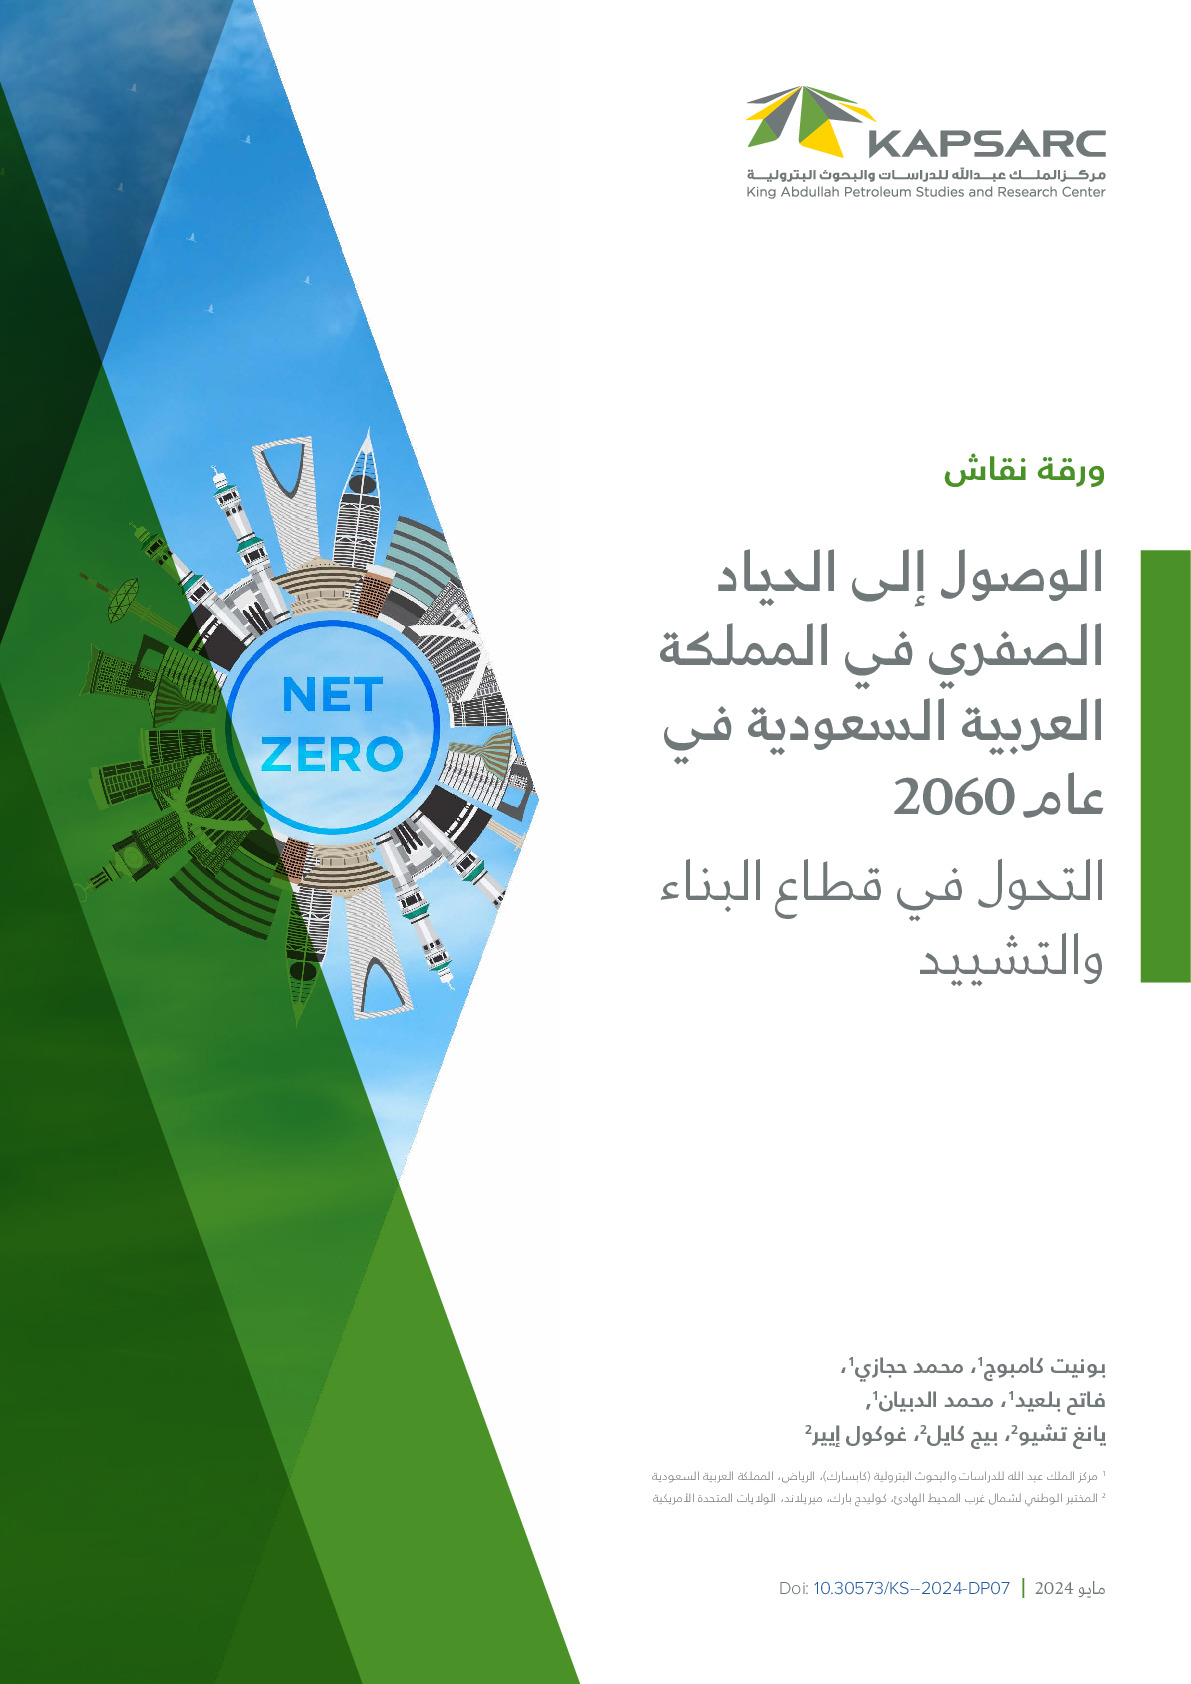 الوصول إلى الحياد الصفري في المملكة العربية السعودية في عام 2060: التحول في قطاع البناء والتشييد